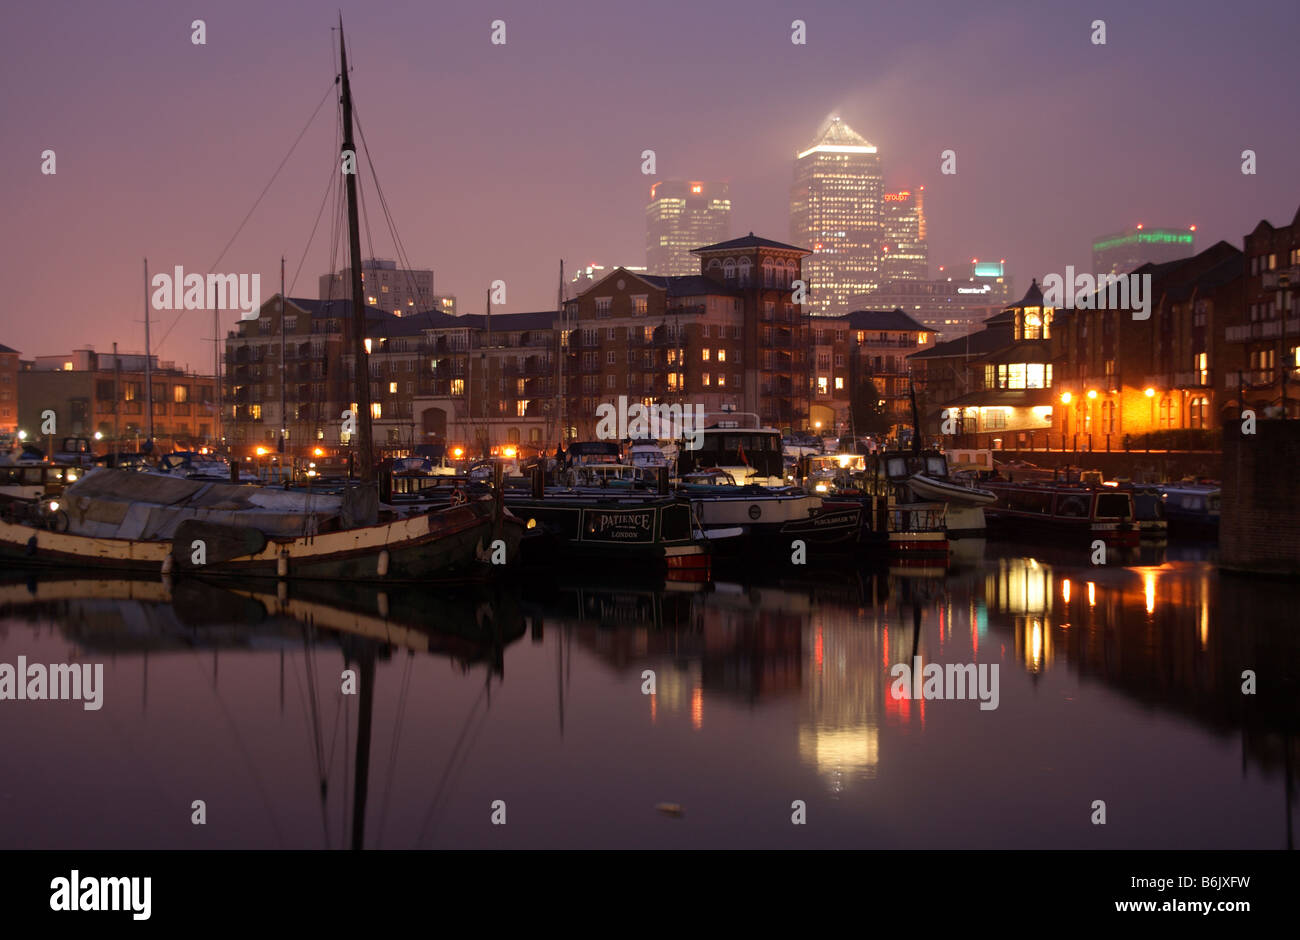 Großbritannien, England, London. Die Limehouse Bassin in London in der Abenddämmerung. Stockfoto